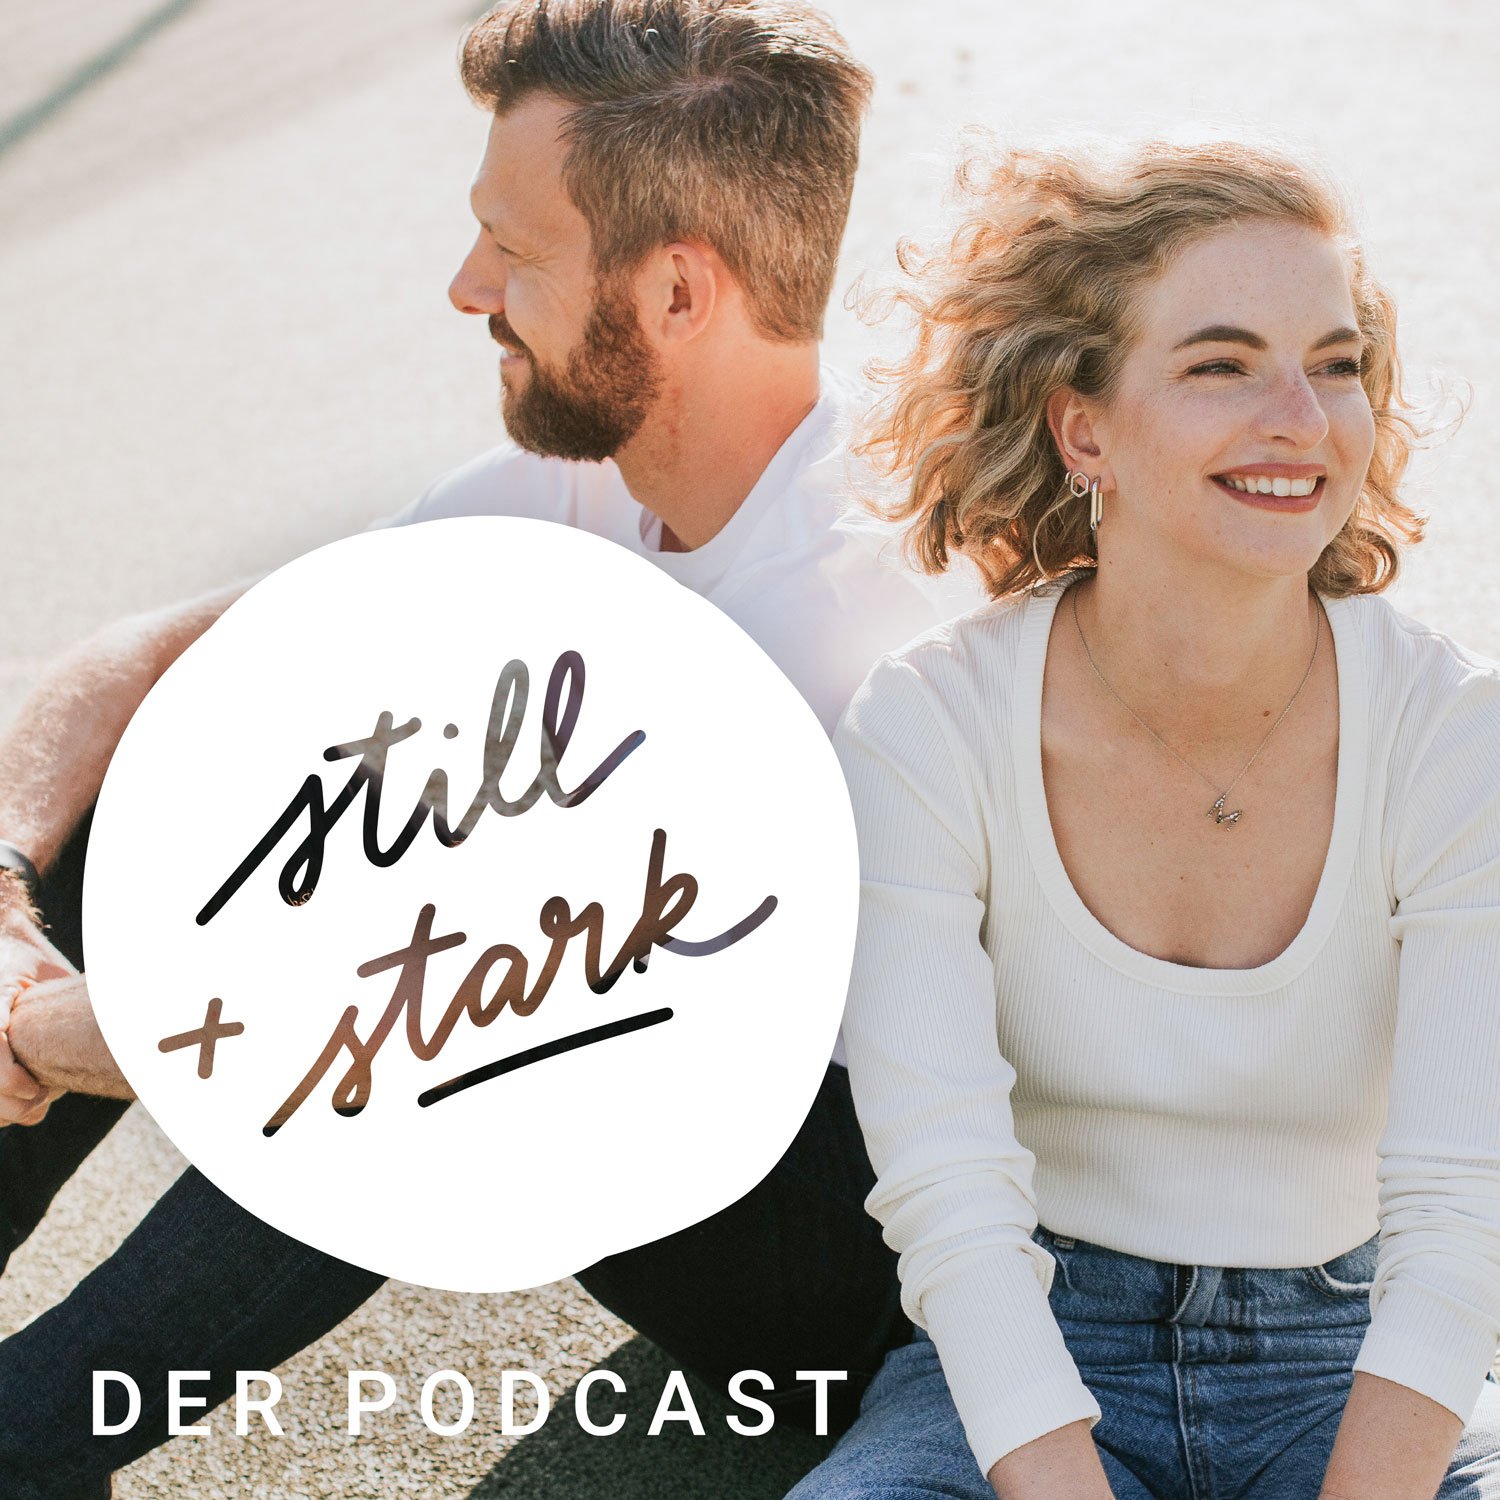 Willkommen beim Still & Stark Podcast!</p>
<p>Der Still & Stark Podcast ist ein Business-Podcast im Stil eines Workshops, der Tausenden leisen Menschen hilft, ihre Identität zu leben und Erfolg für neu zu definieren. Wir erinnern dich daran, dass du nicht extravertiert sein musst, um aufzublühen und deine persönlichen Ziele in die Tat umzusetzen!